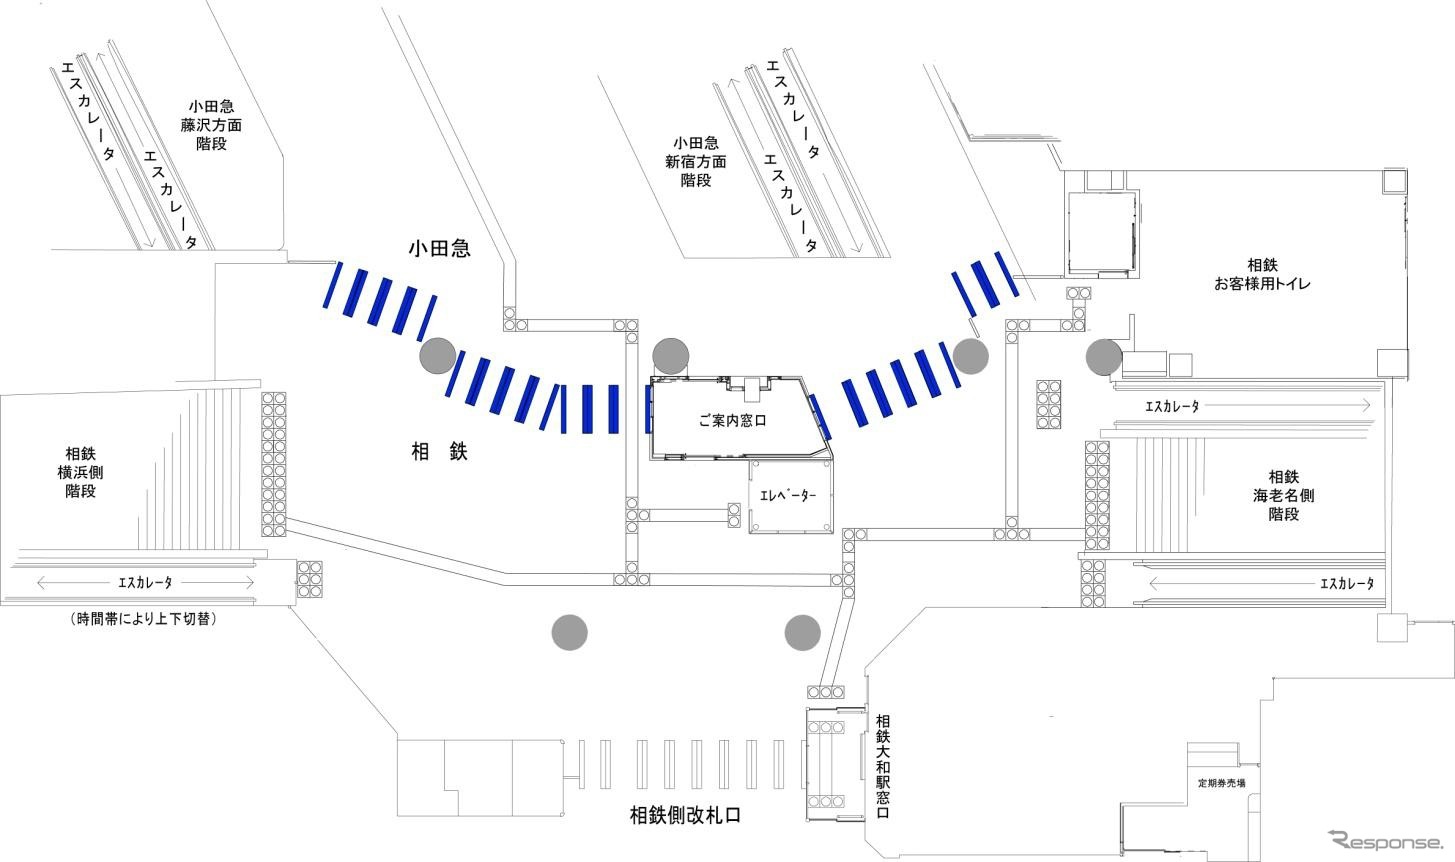 大和駅の構内図。青で塗られた部分に改札機が設置される。